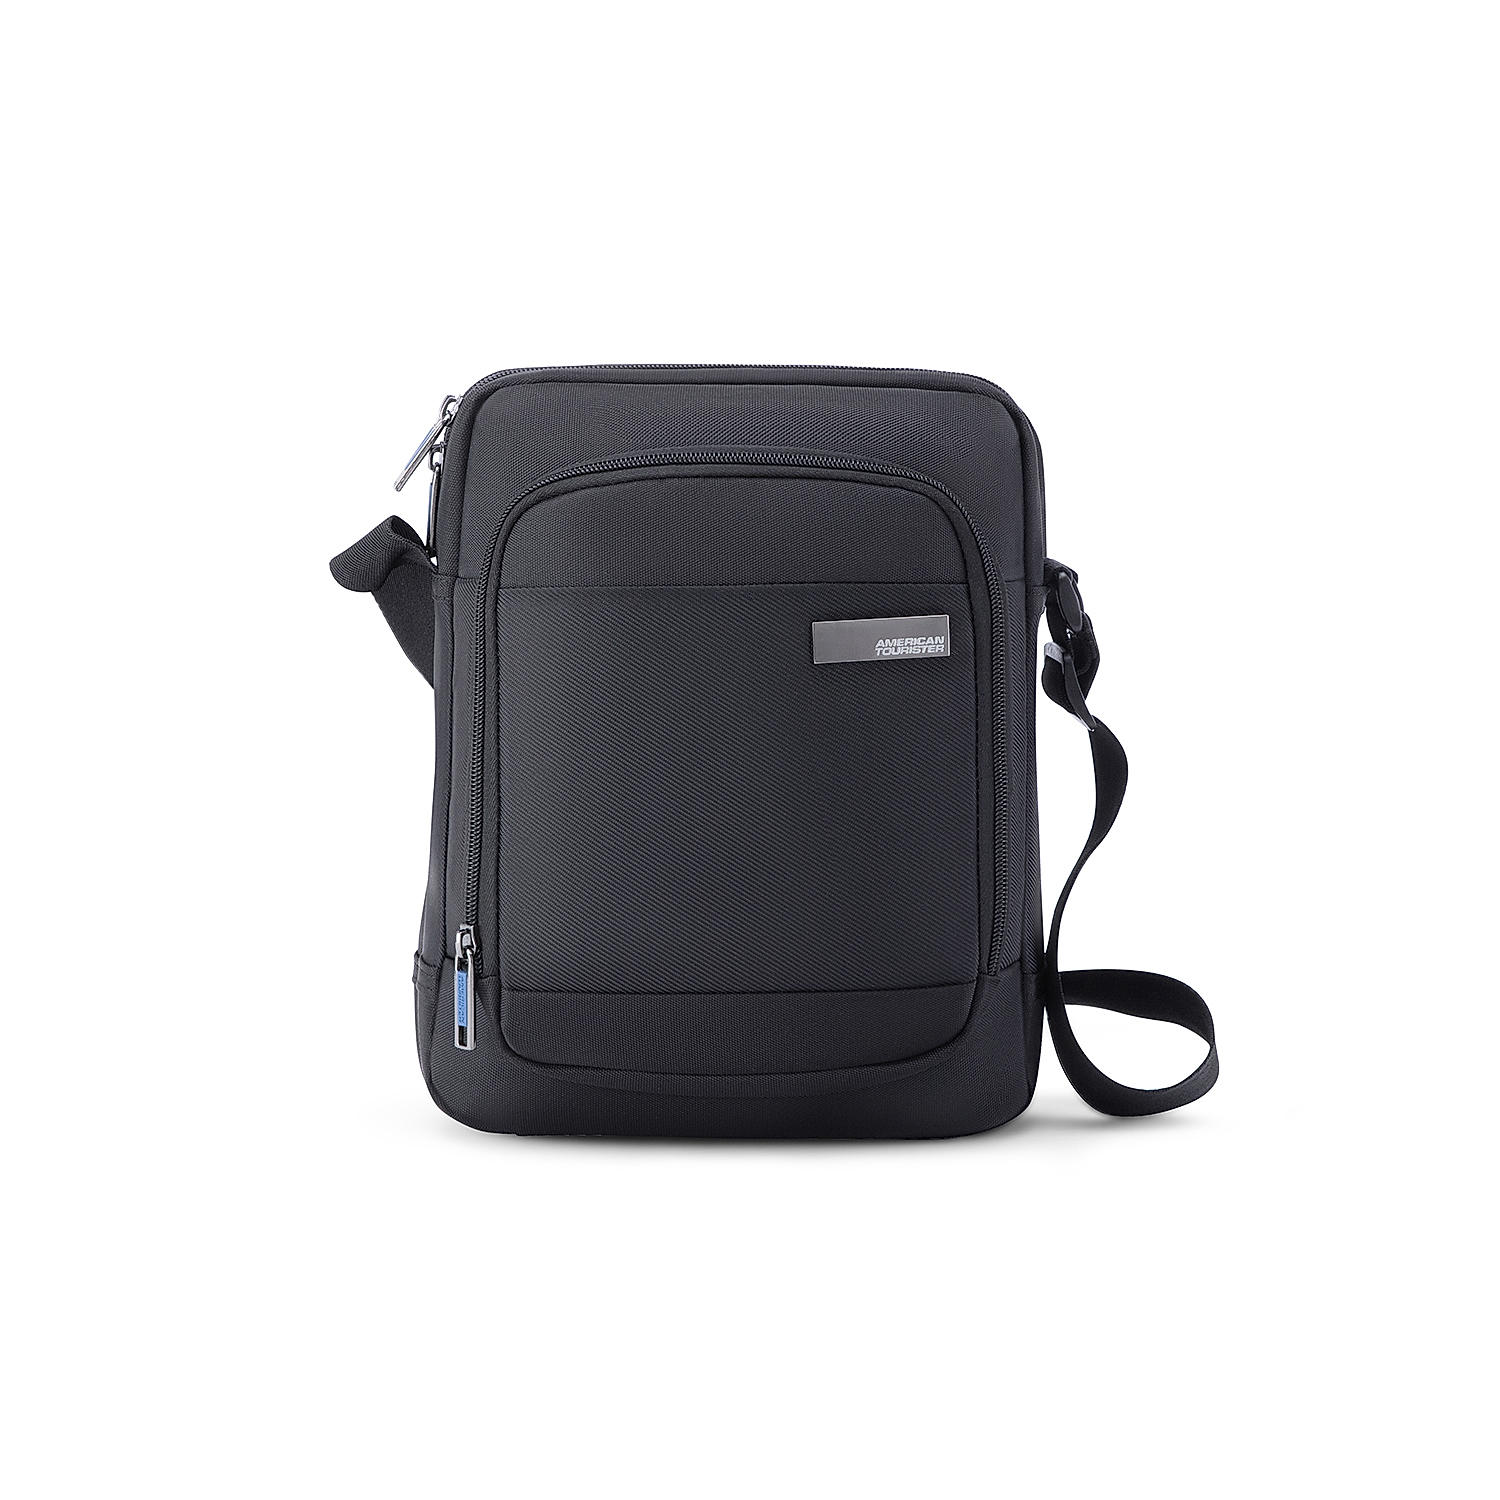 Buy Black Nova Sling Bag (26 cm) Briefcase Online at American Tourister ...